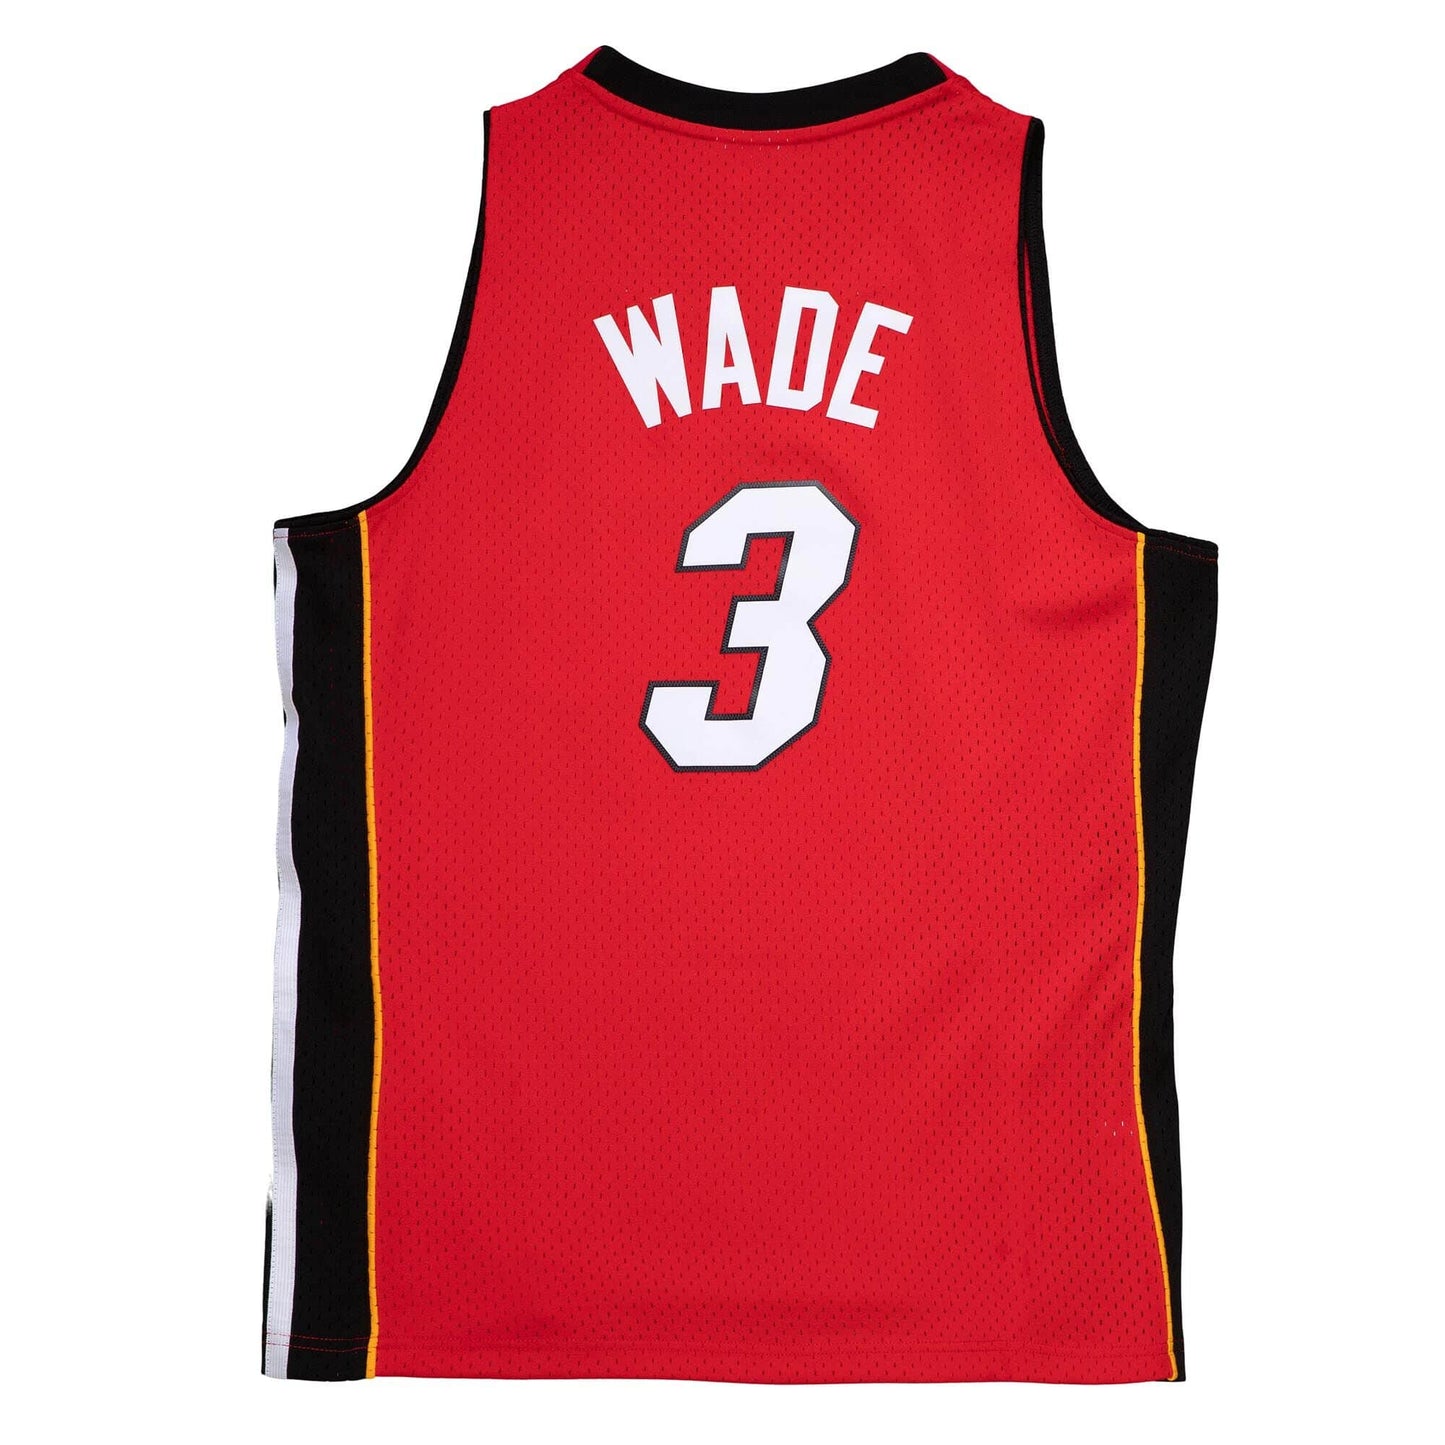 NBA Swingman Jersey Miami Heat Alternate 2005-06 Dwyane Wade